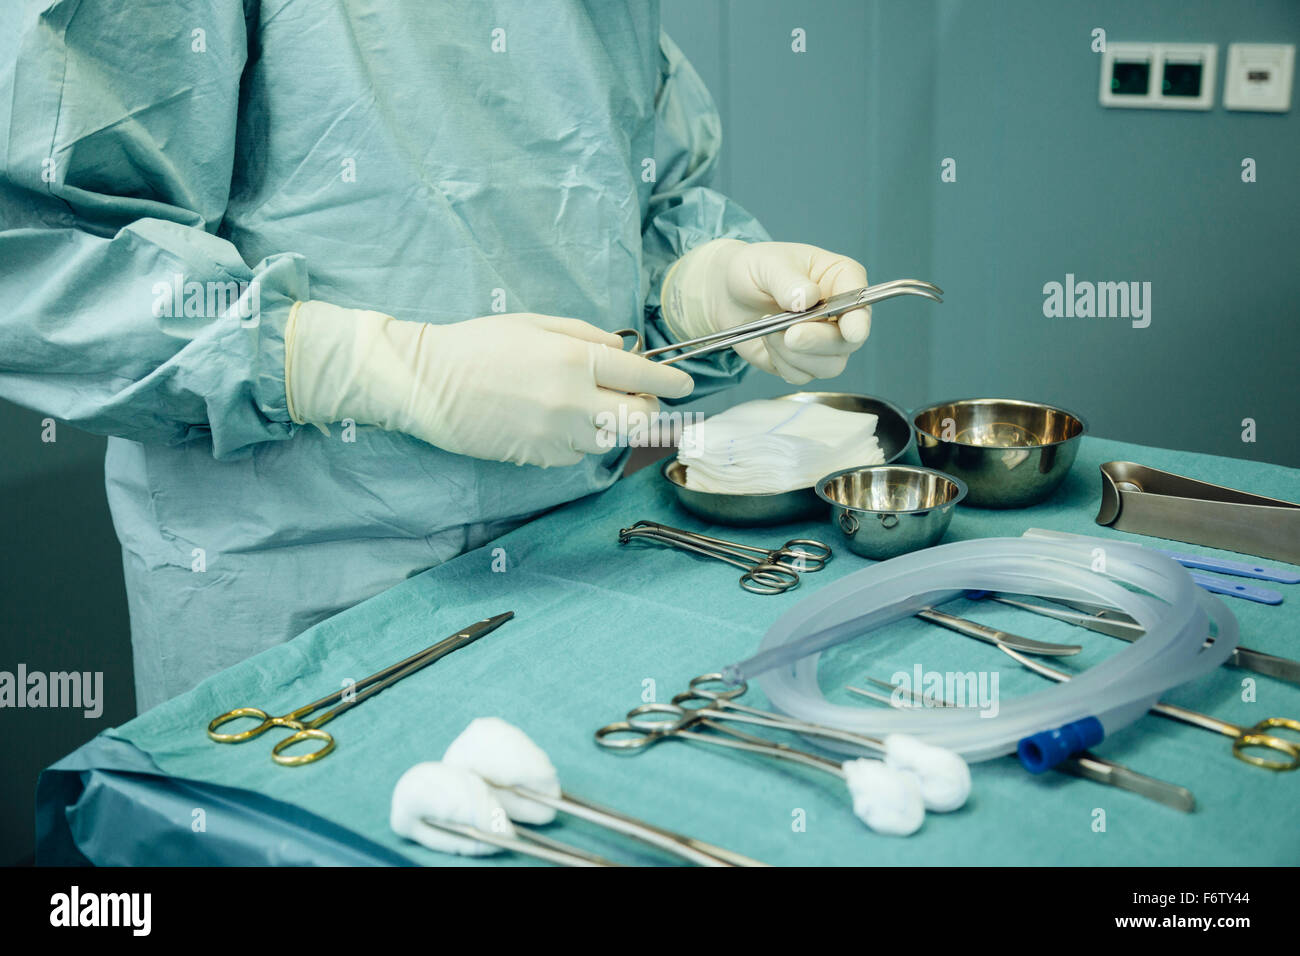 Les instruments chirurgicaux sont disposés sur une table dans la salle d'exploitation Banque D'Images